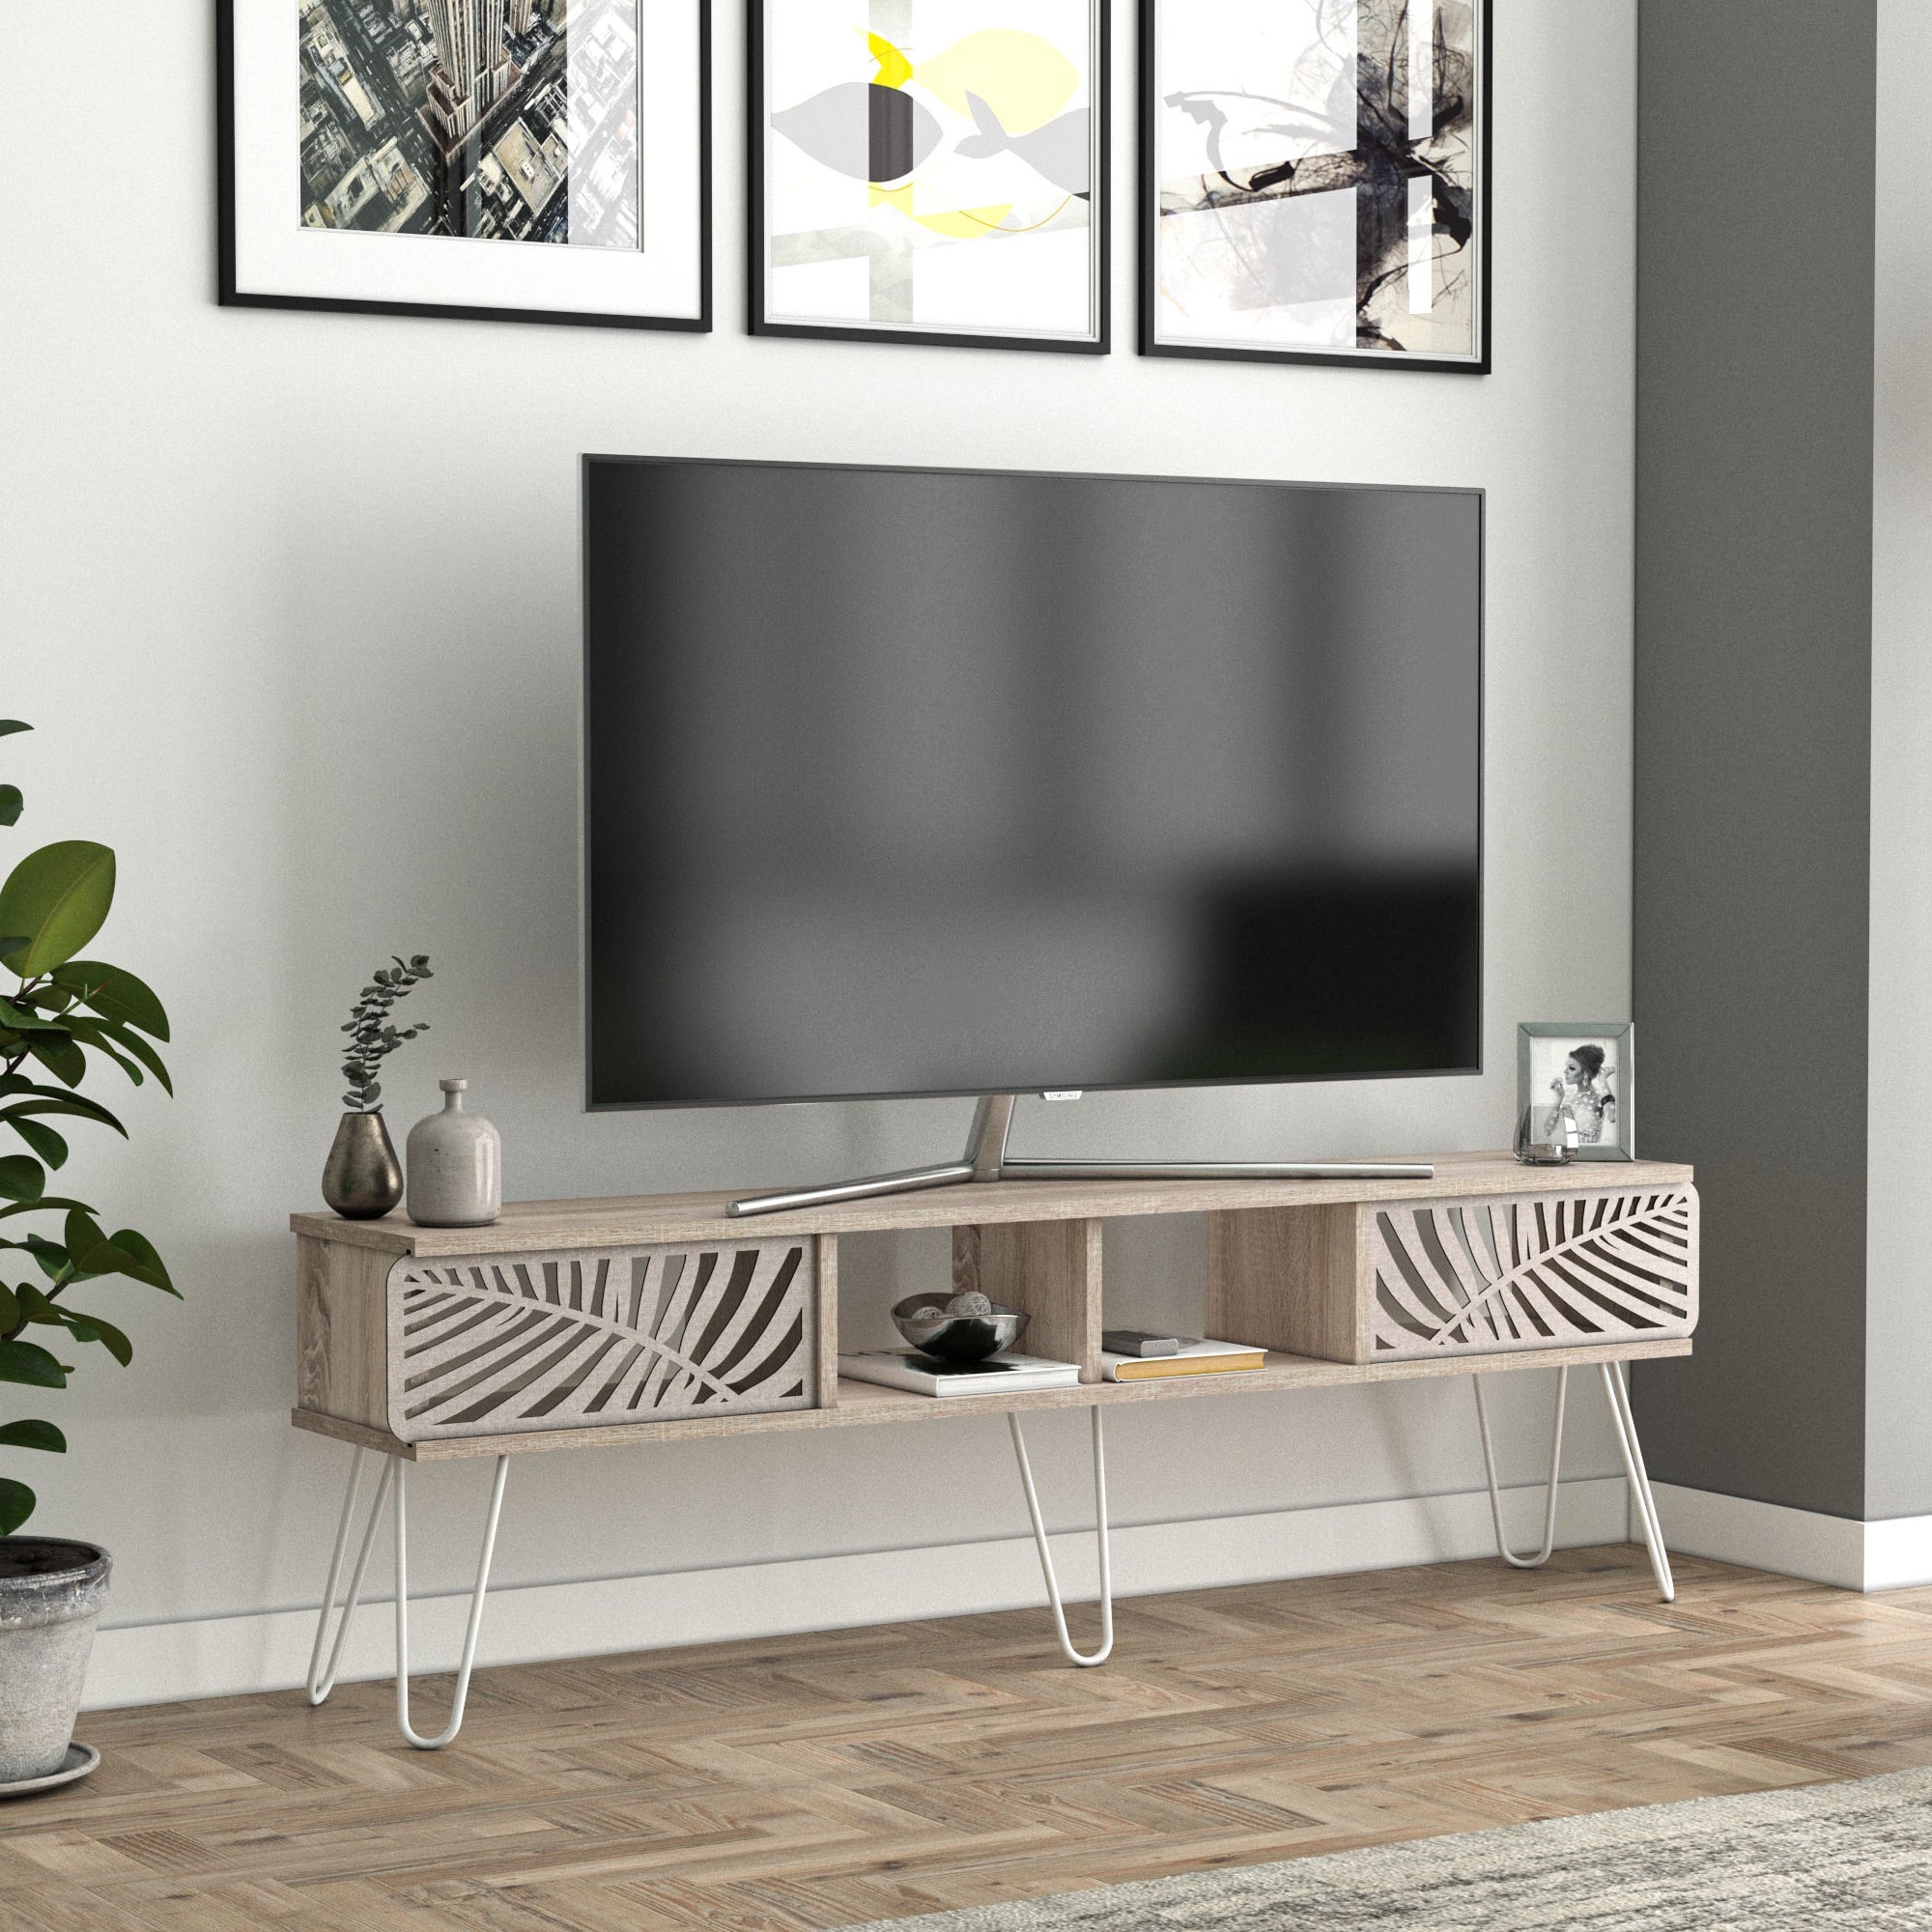 Spinle mobile porta TV basso design rustico bianco 160cm